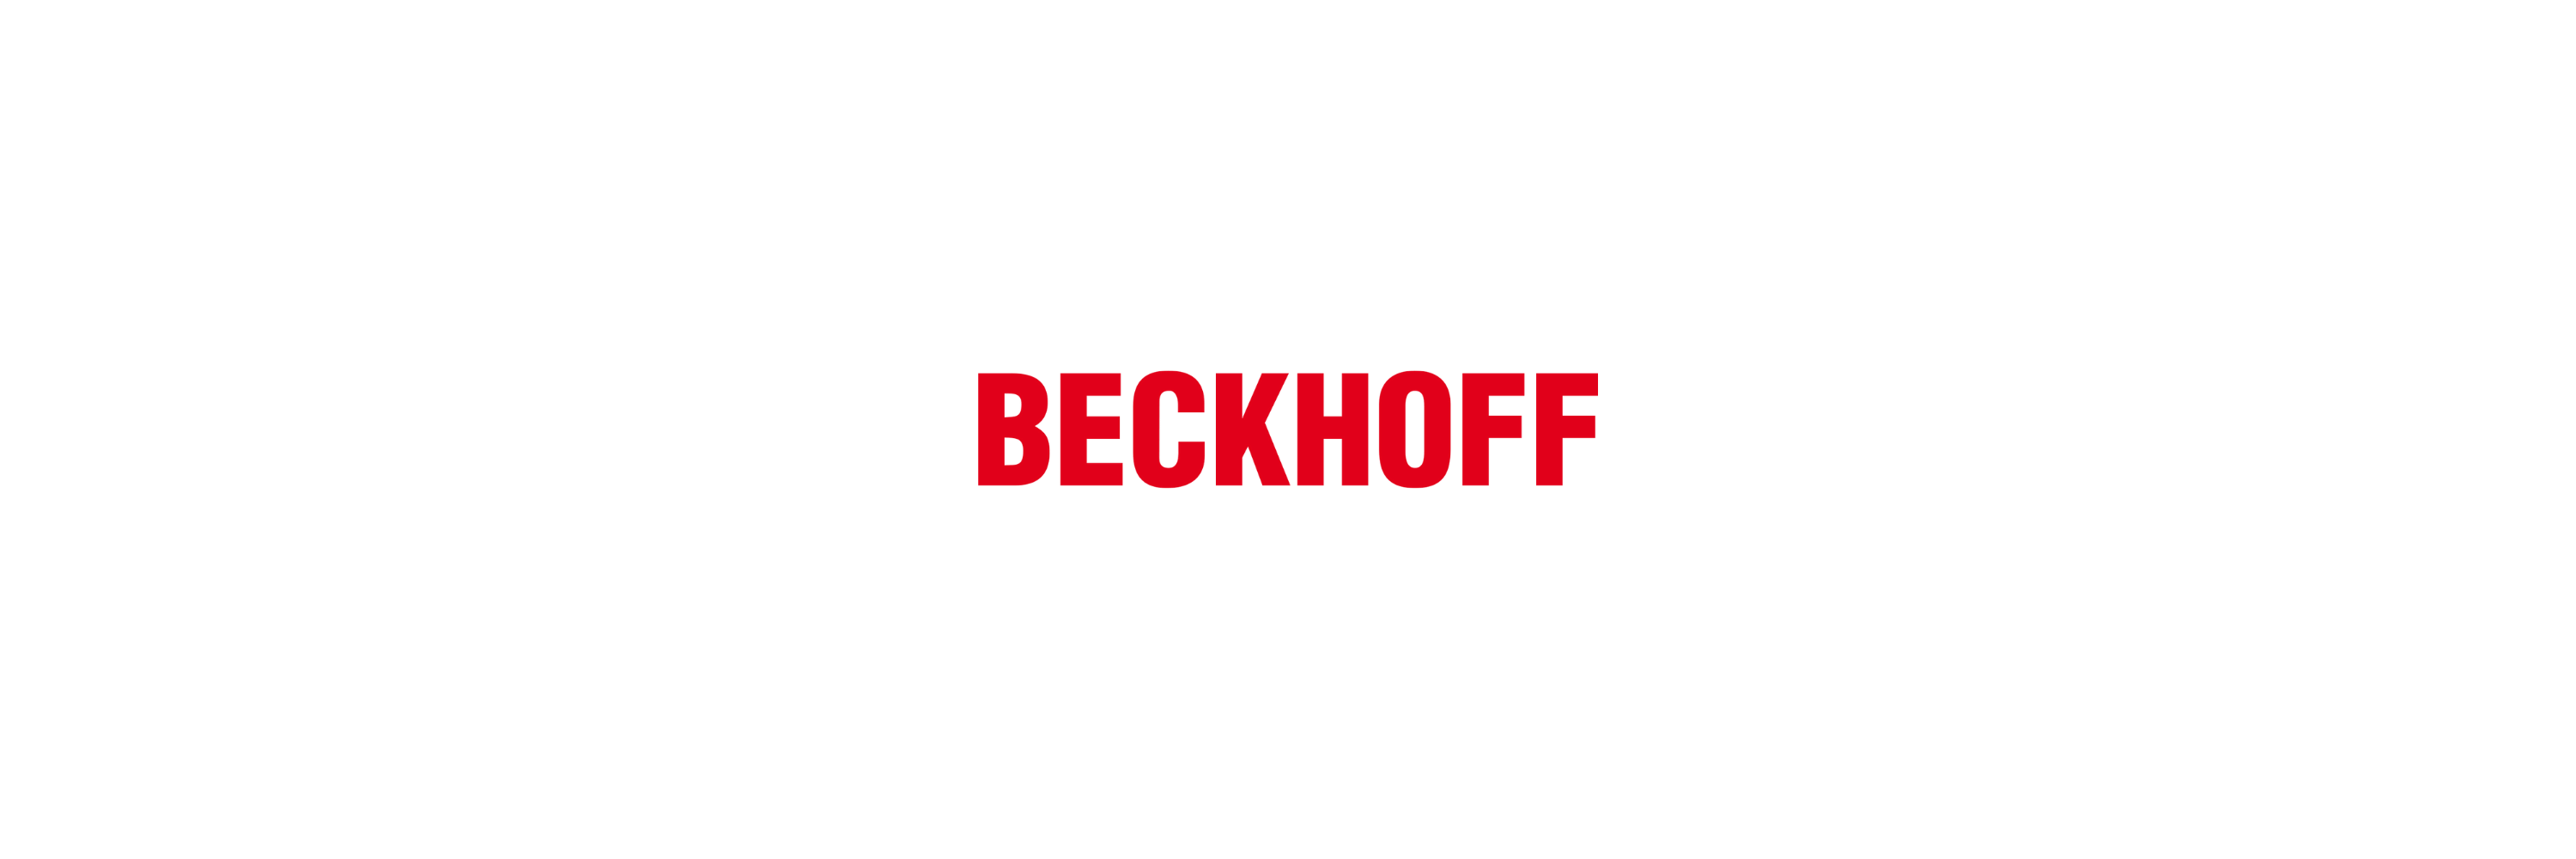 Beckhoff - Klenk Maschinenhandel